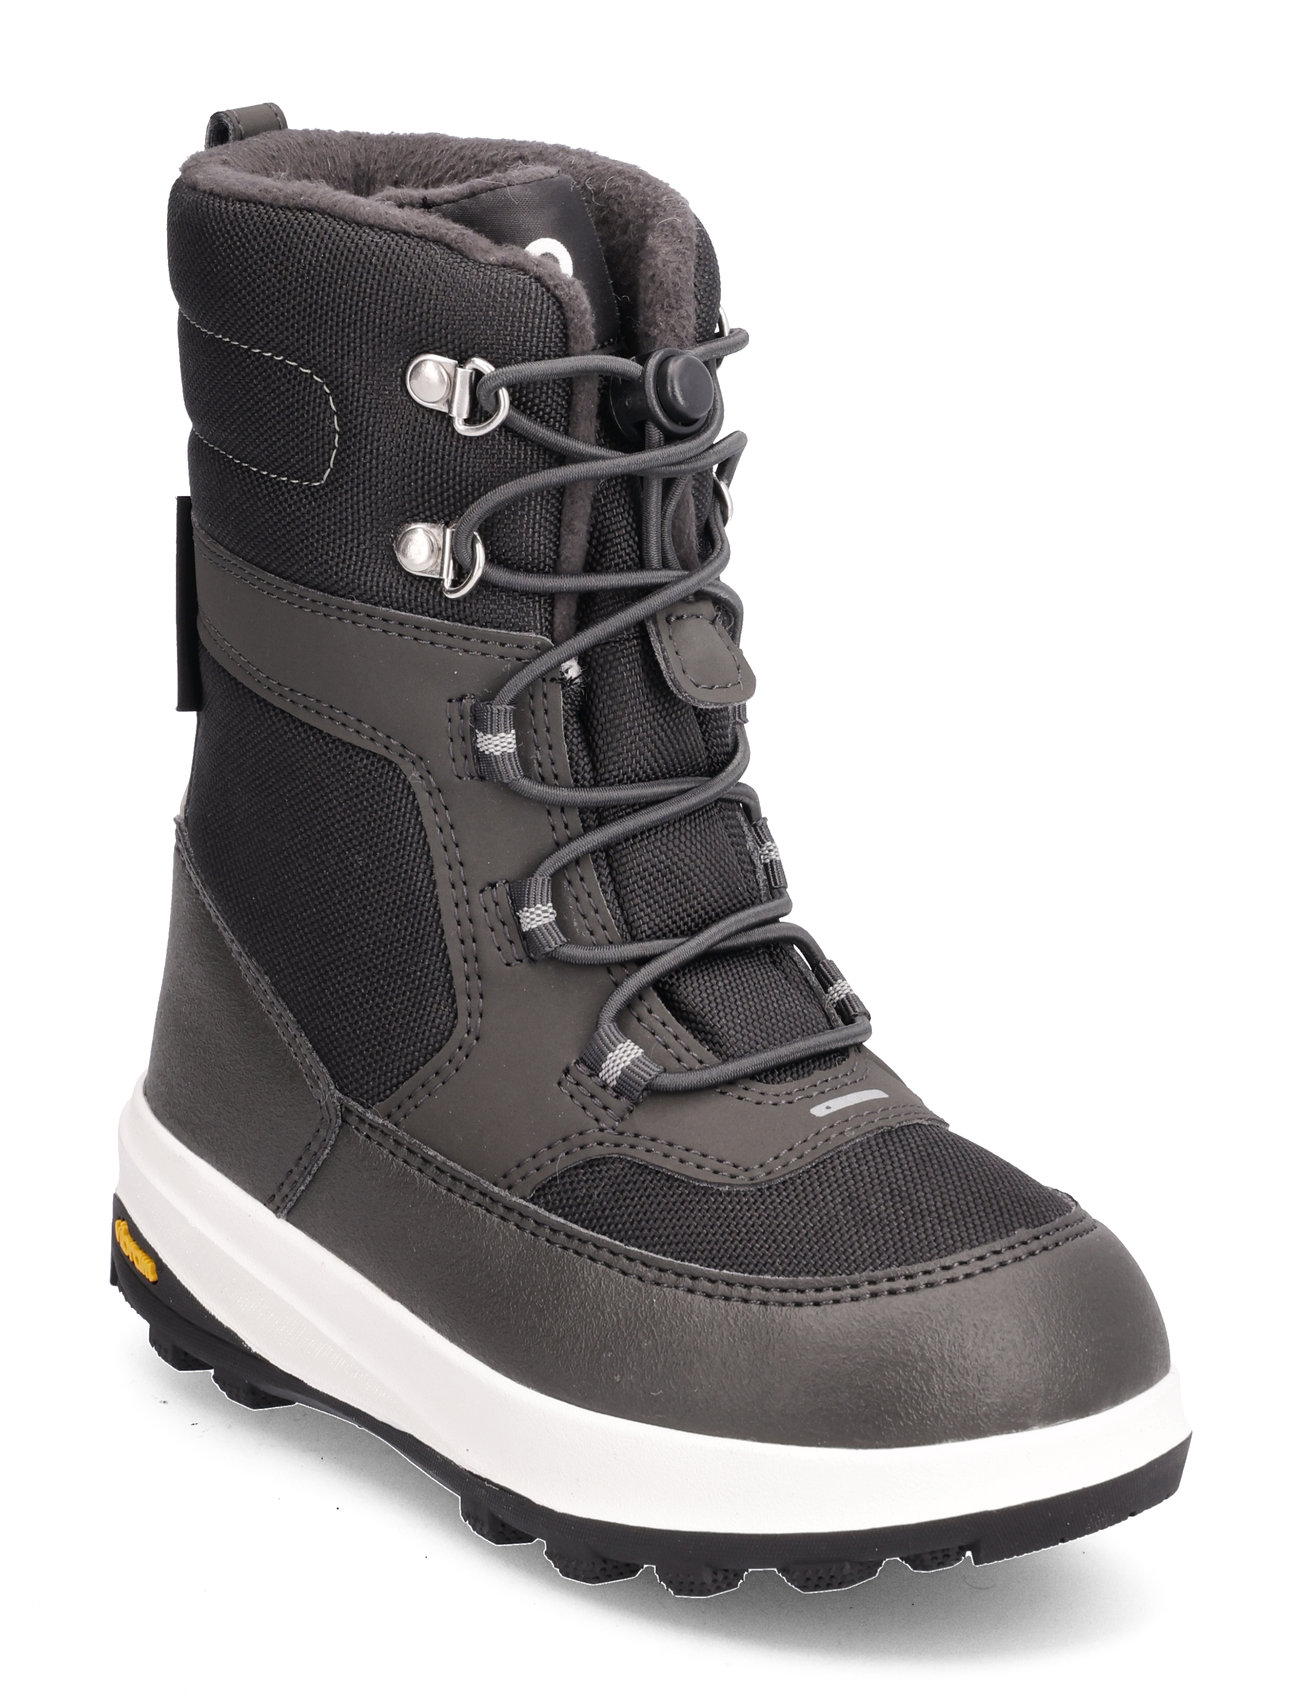 Reimatec Winter Boots, Laplander 2.0 Sport Winter Boots Winter Boots W. Laces Black Reima